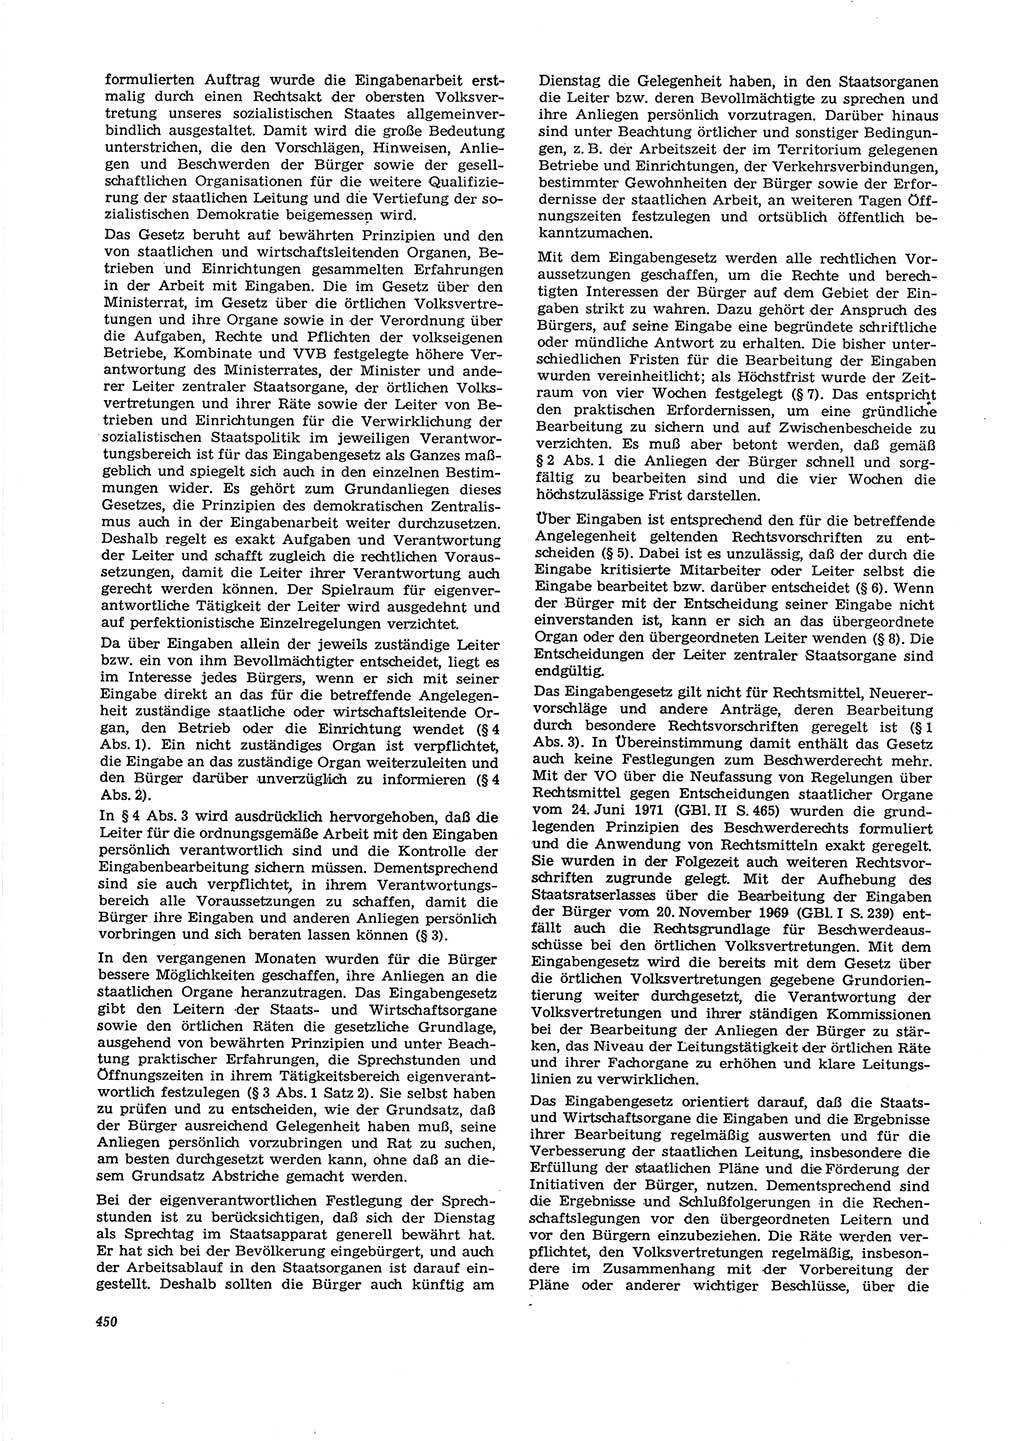 Neue Justiz (NJ), Zeitschrift für Recht und Rechtswissenschaft [Deutsche Demokratische Republik (DDR)], 29. Jahrgang 1975, Seite 450 (NJ DDR 1975, S. 450)